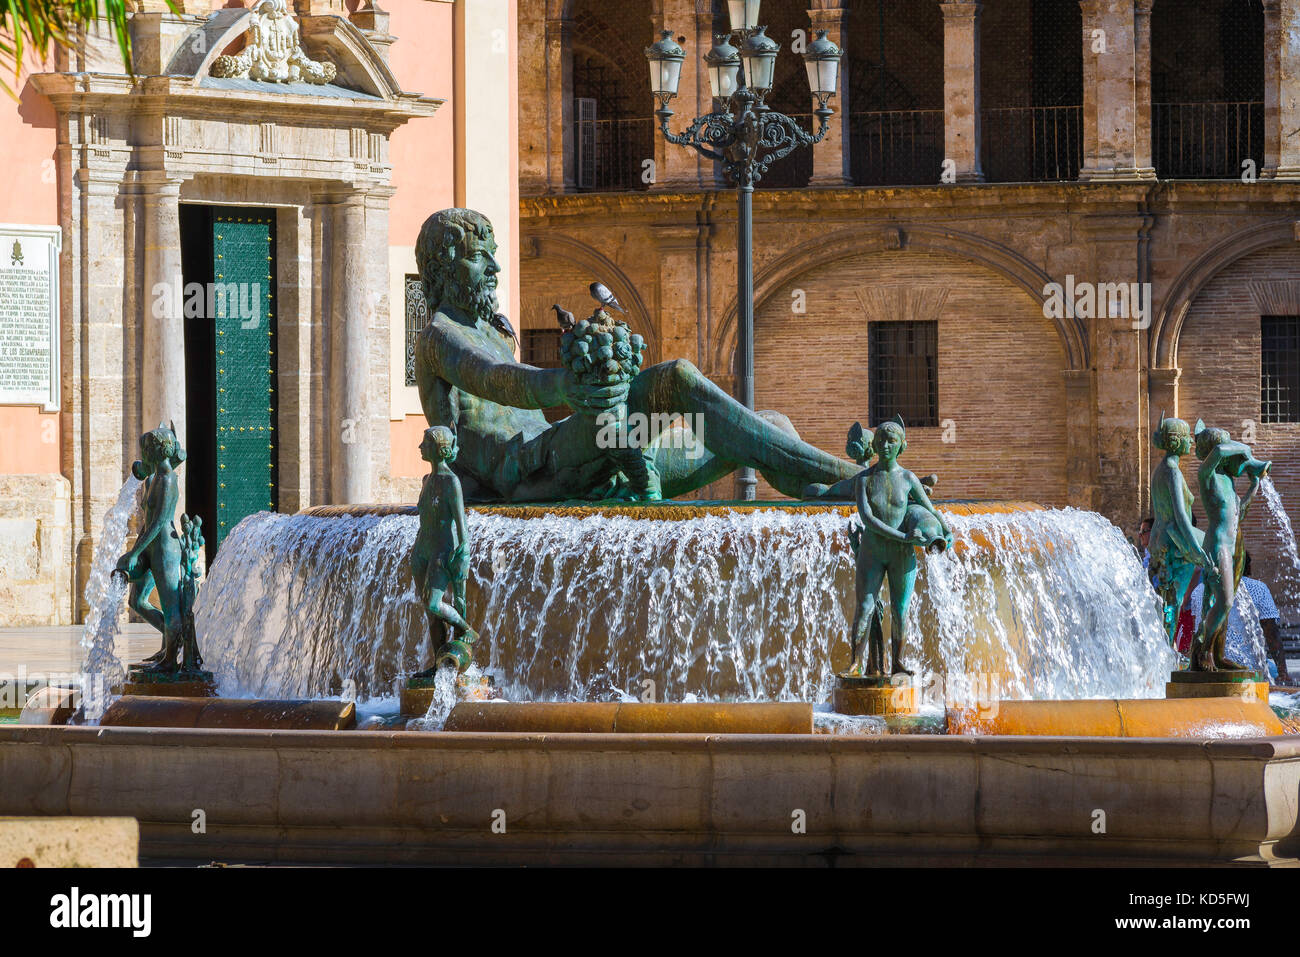 Valencia Plaza, statue of Neptune on the Turia Fountain in the Plaza de la Virgen in the centre of Valencia, Spain. Stock Photo